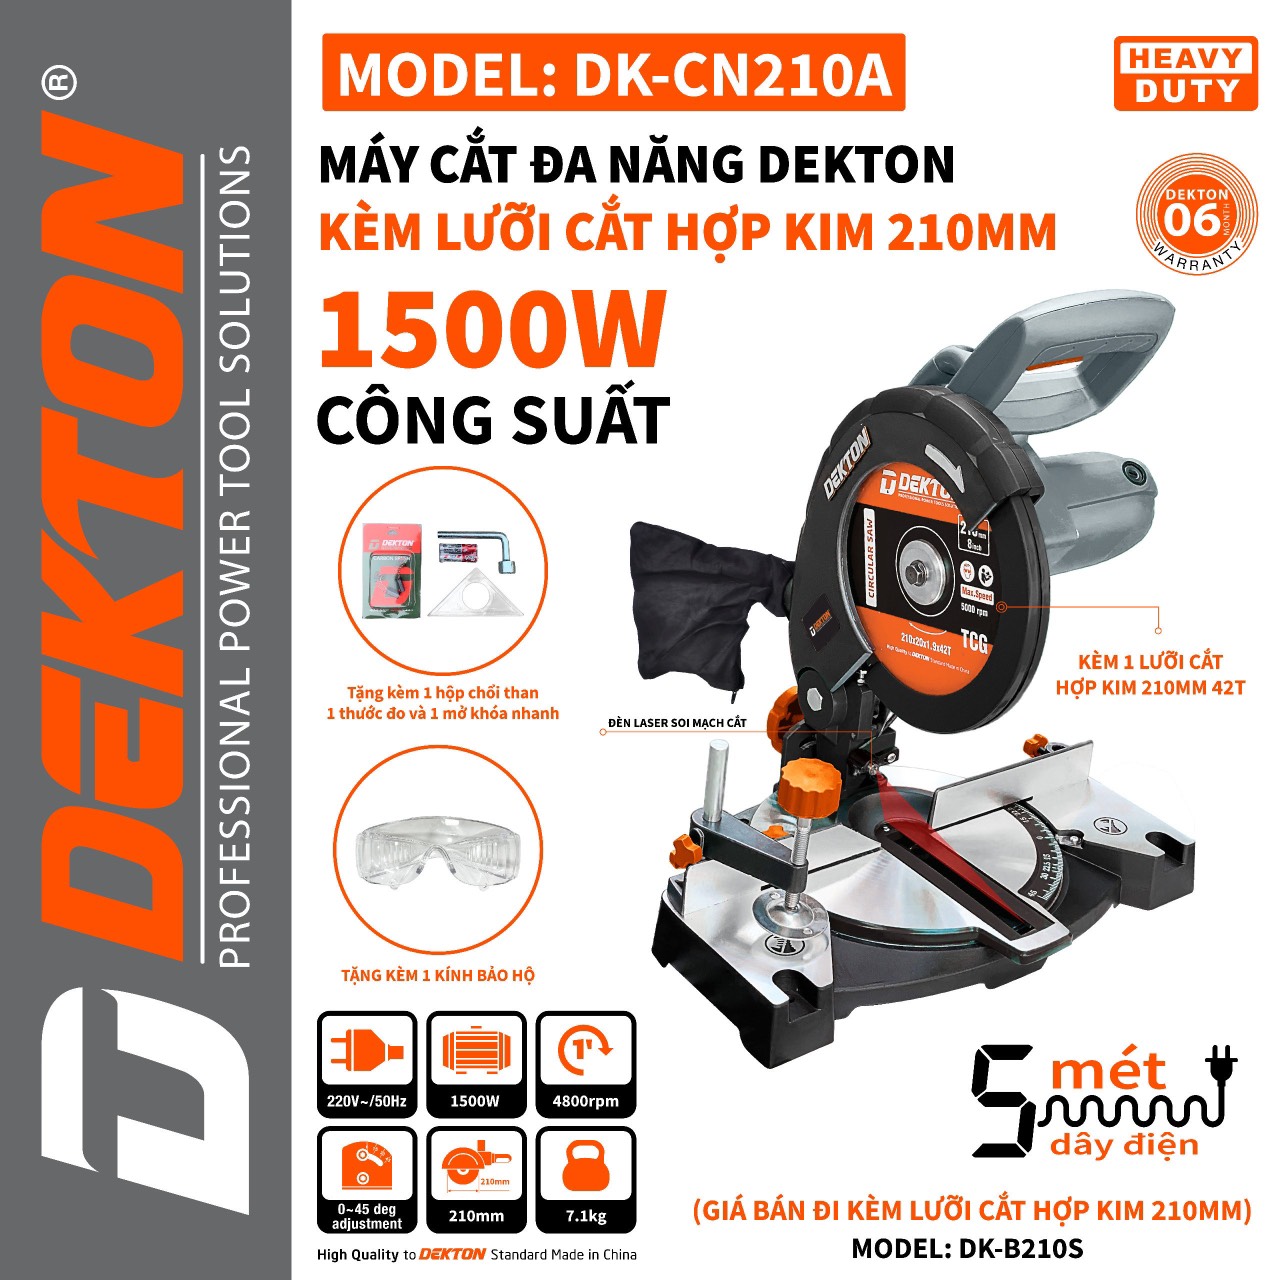 Máy cắt đa năng Dekton DK-CN210A